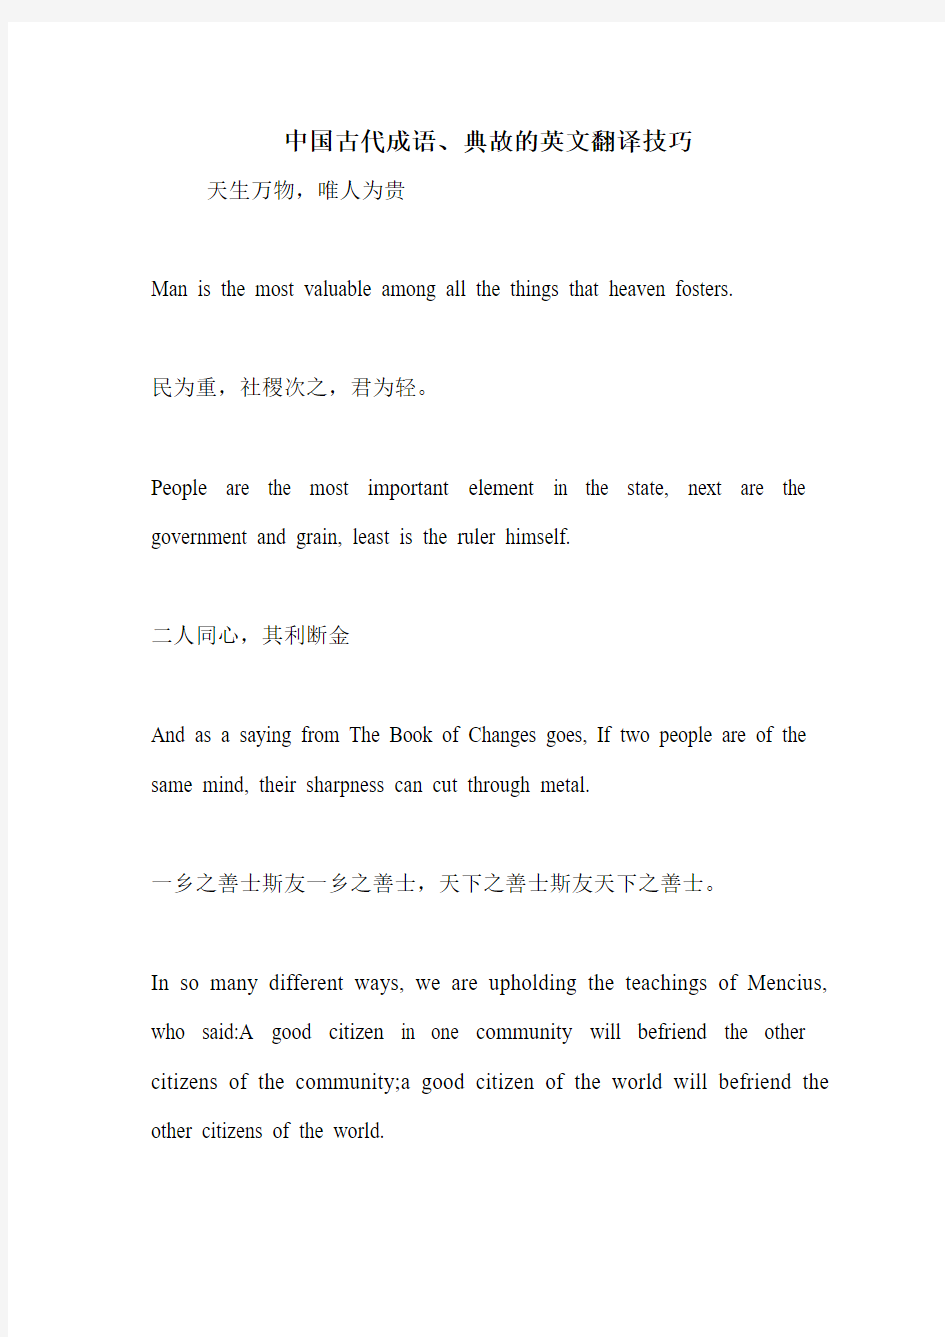 中国古代成语、典故的英文翻译技巧